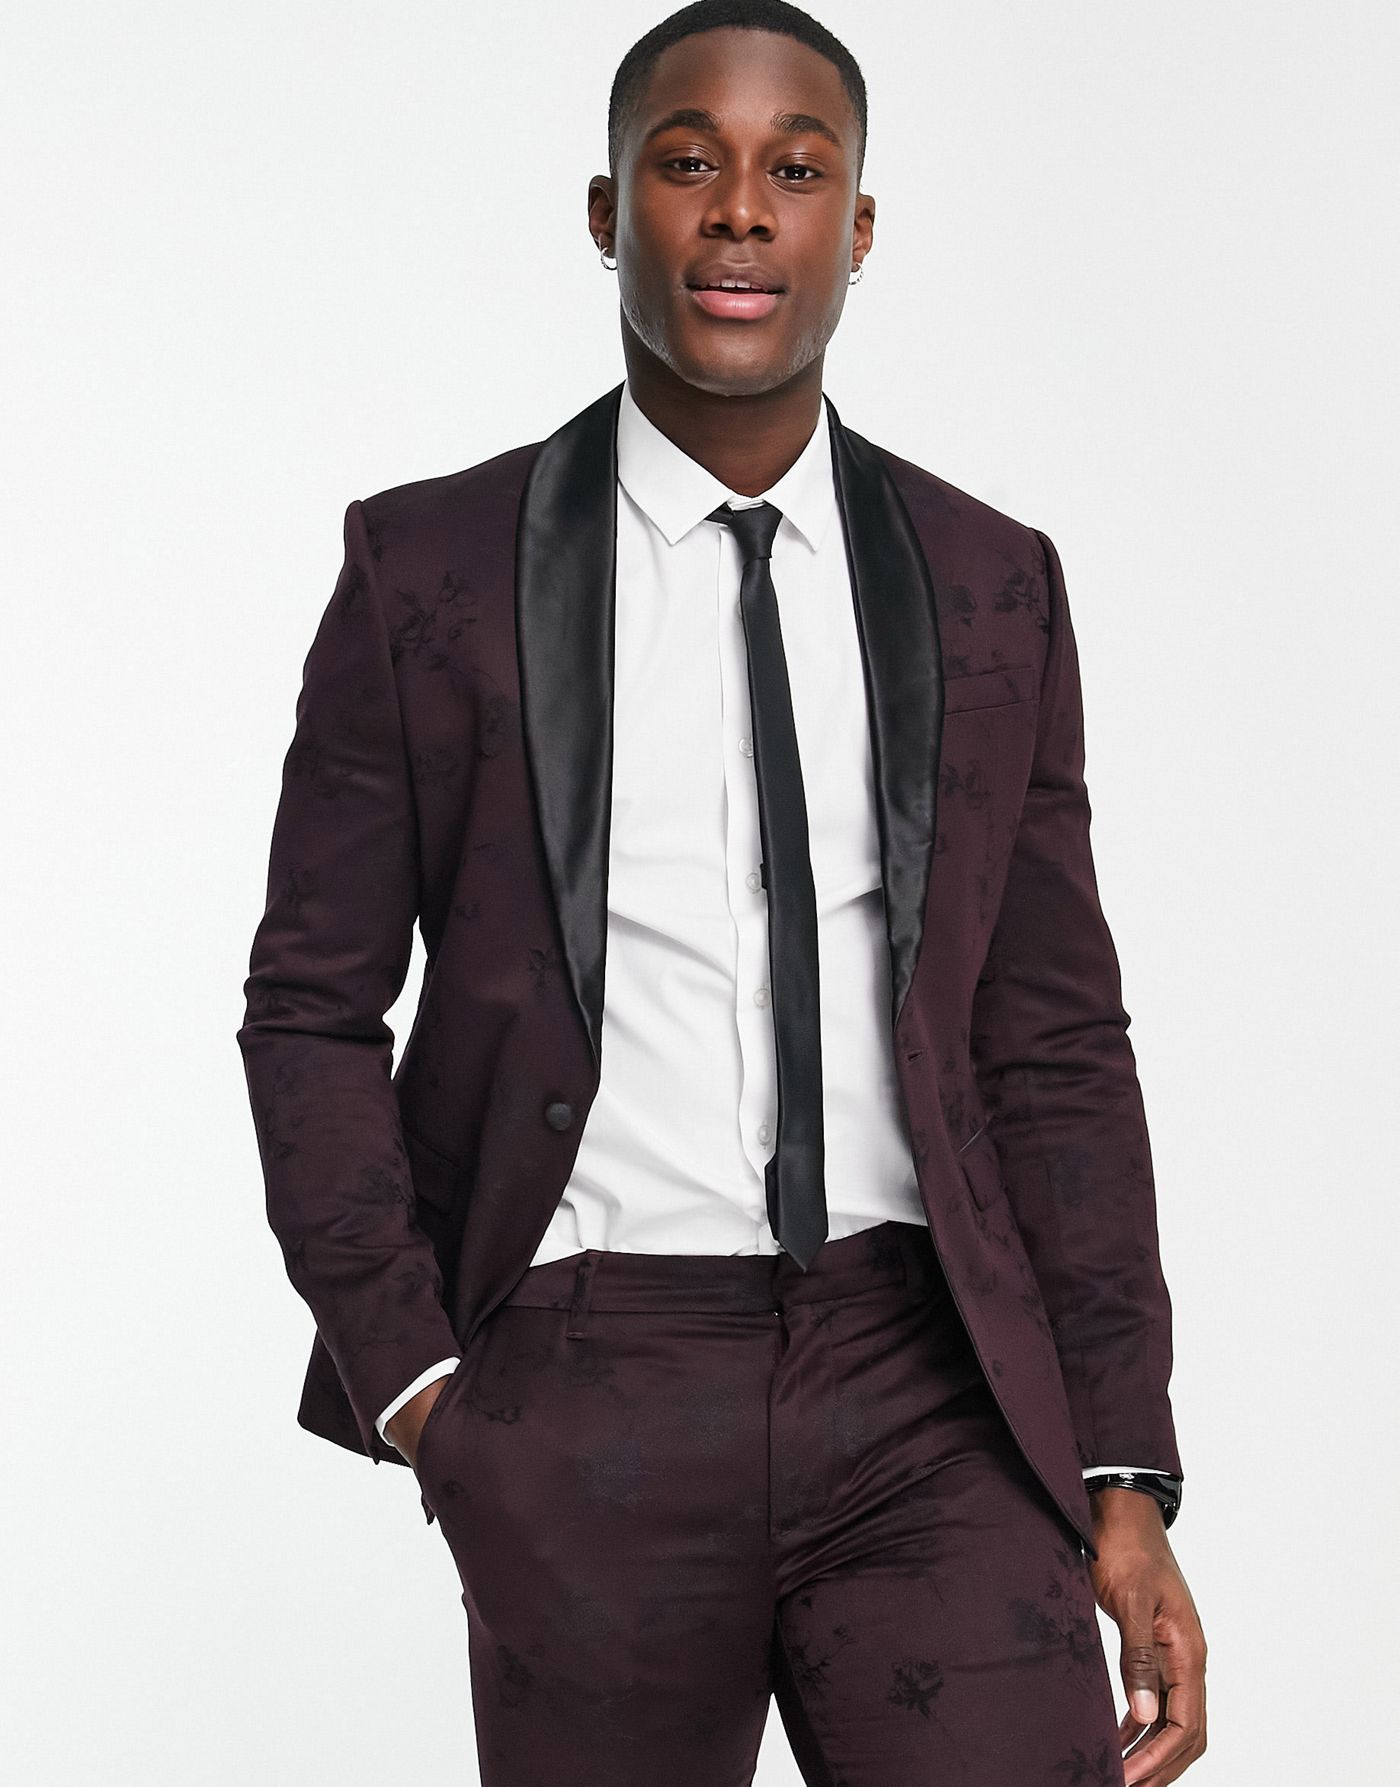 New Look skinny suit jacket in burgundy jacquard